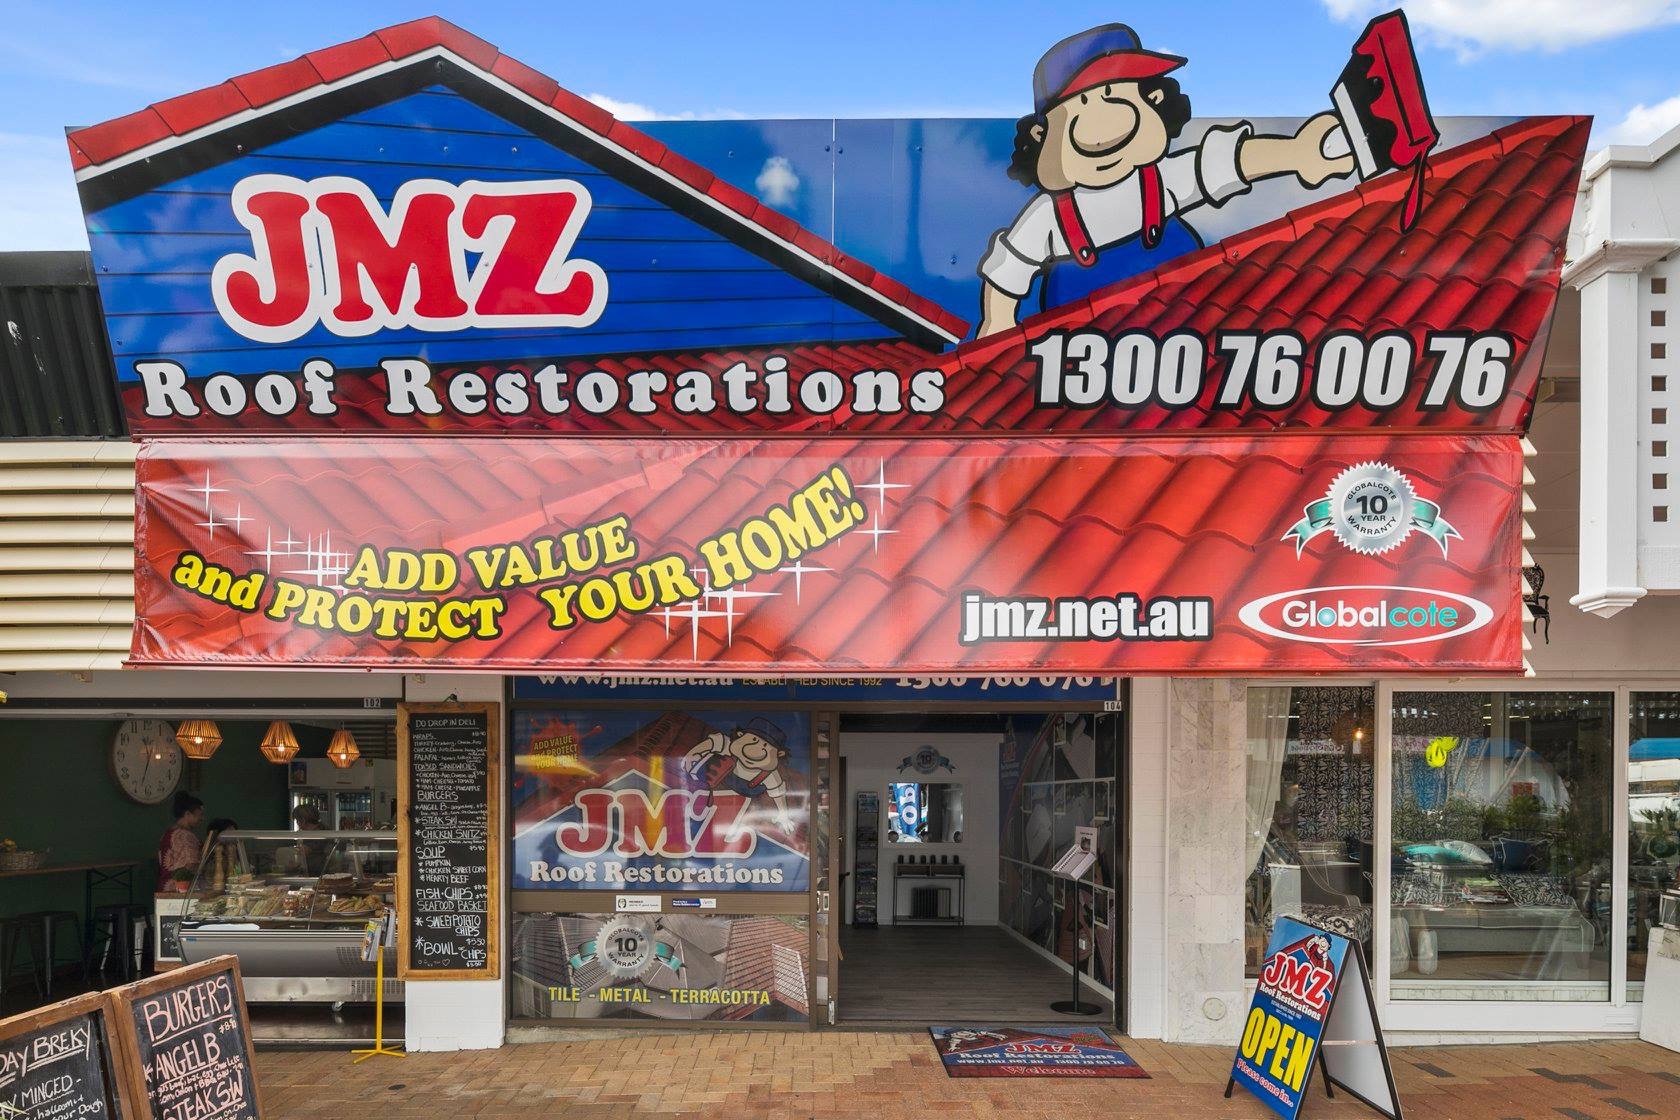 Images JMZ Roof Restorations